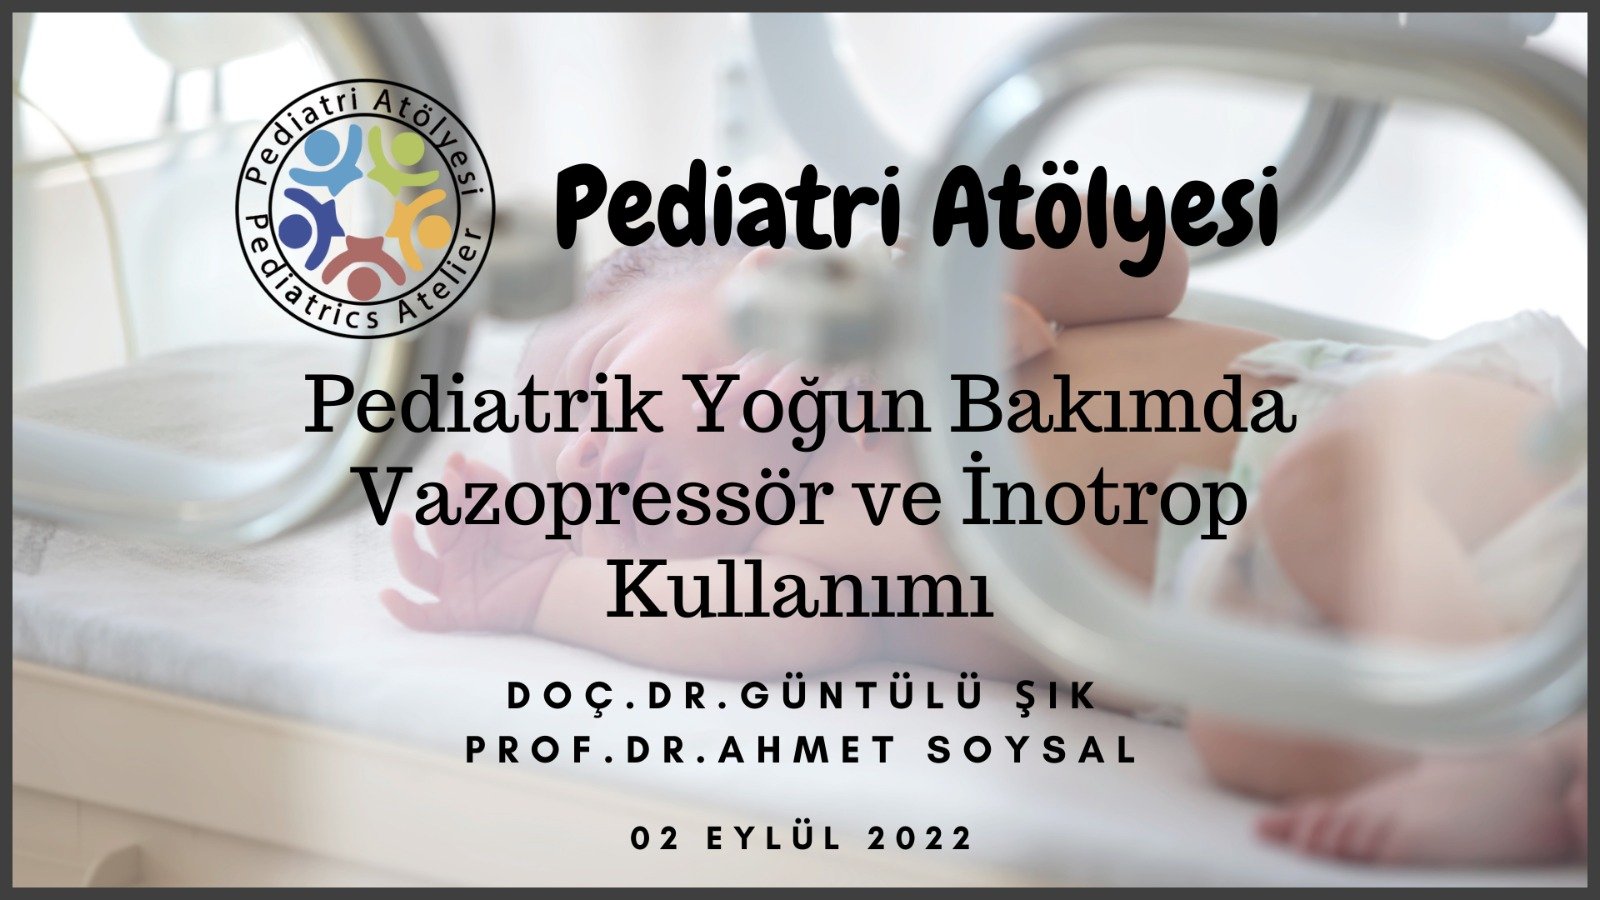 Pediatrik Yoğun Bakımda Vazopressör ve İnotrop Kullanımı